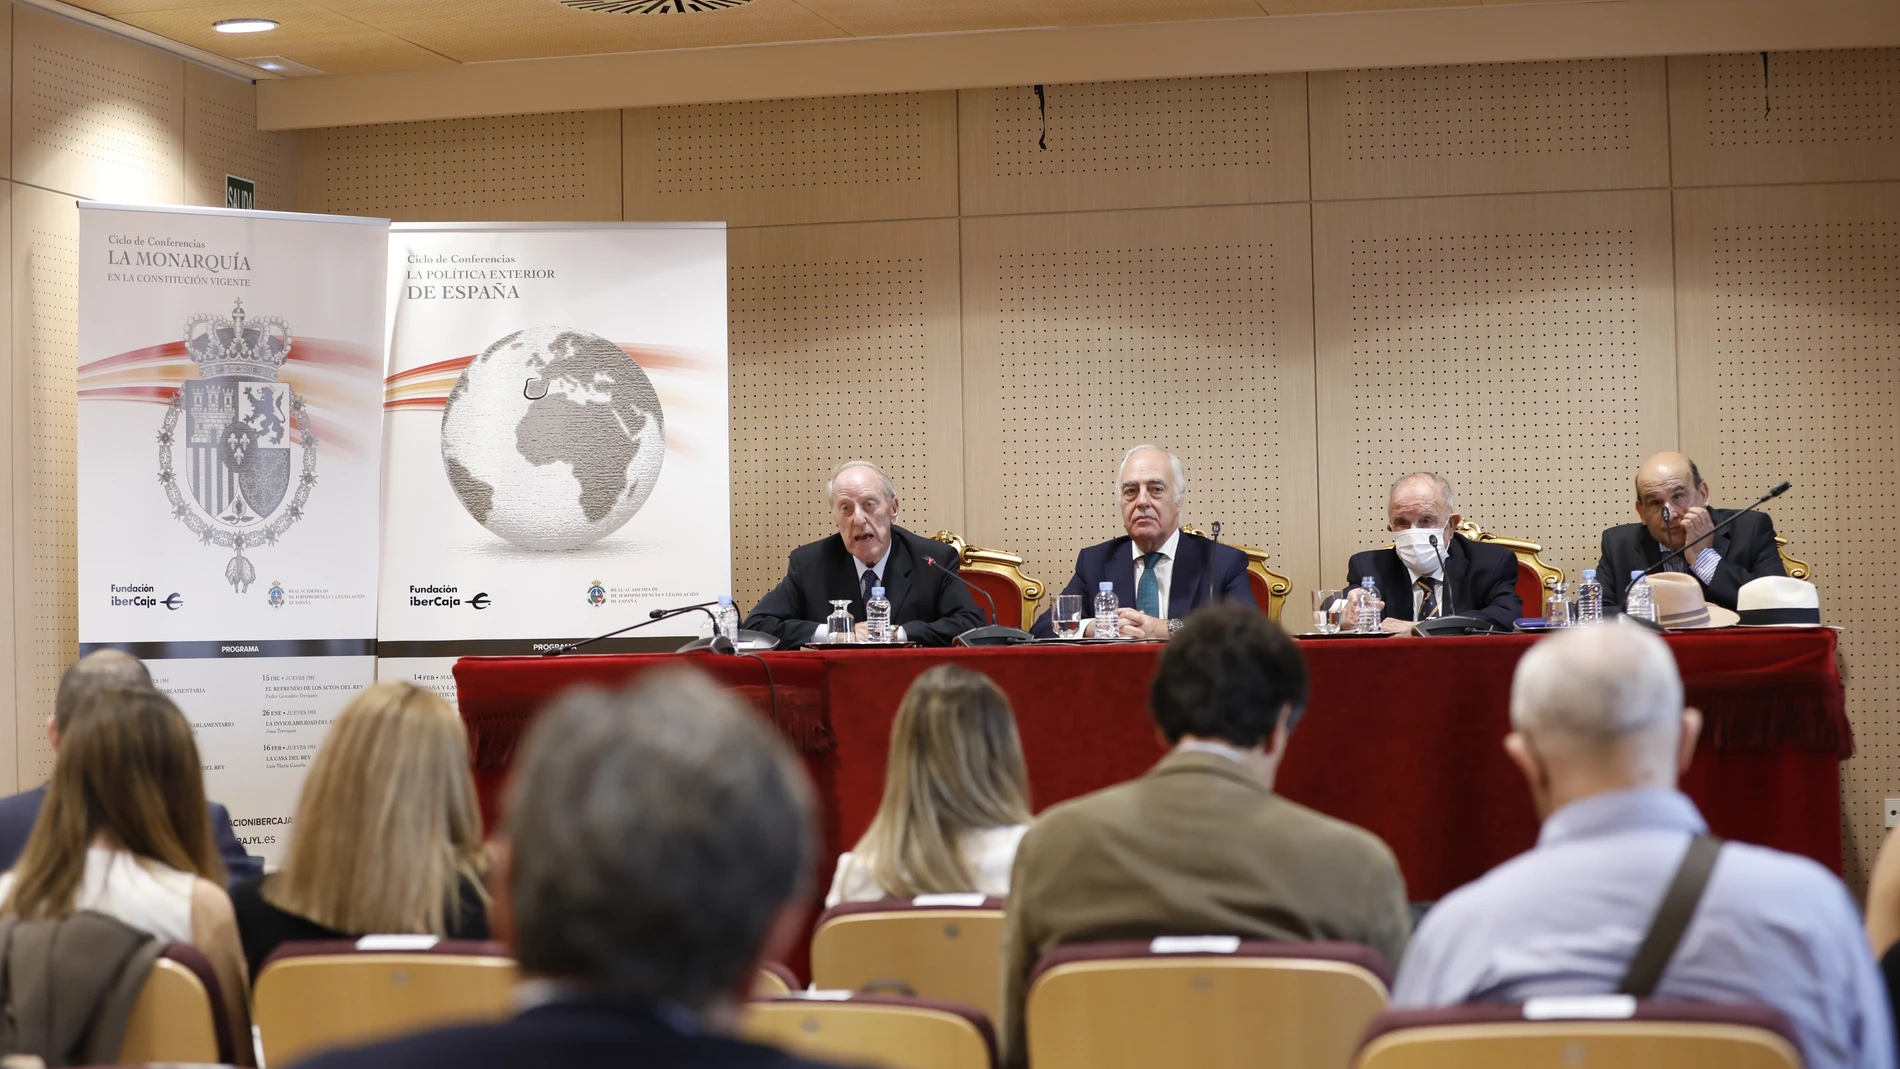 Presentacion de los ciclos de Conferencias sobre Monarquía y Política Exterior de España en la Real Academia de Jurisprudencia